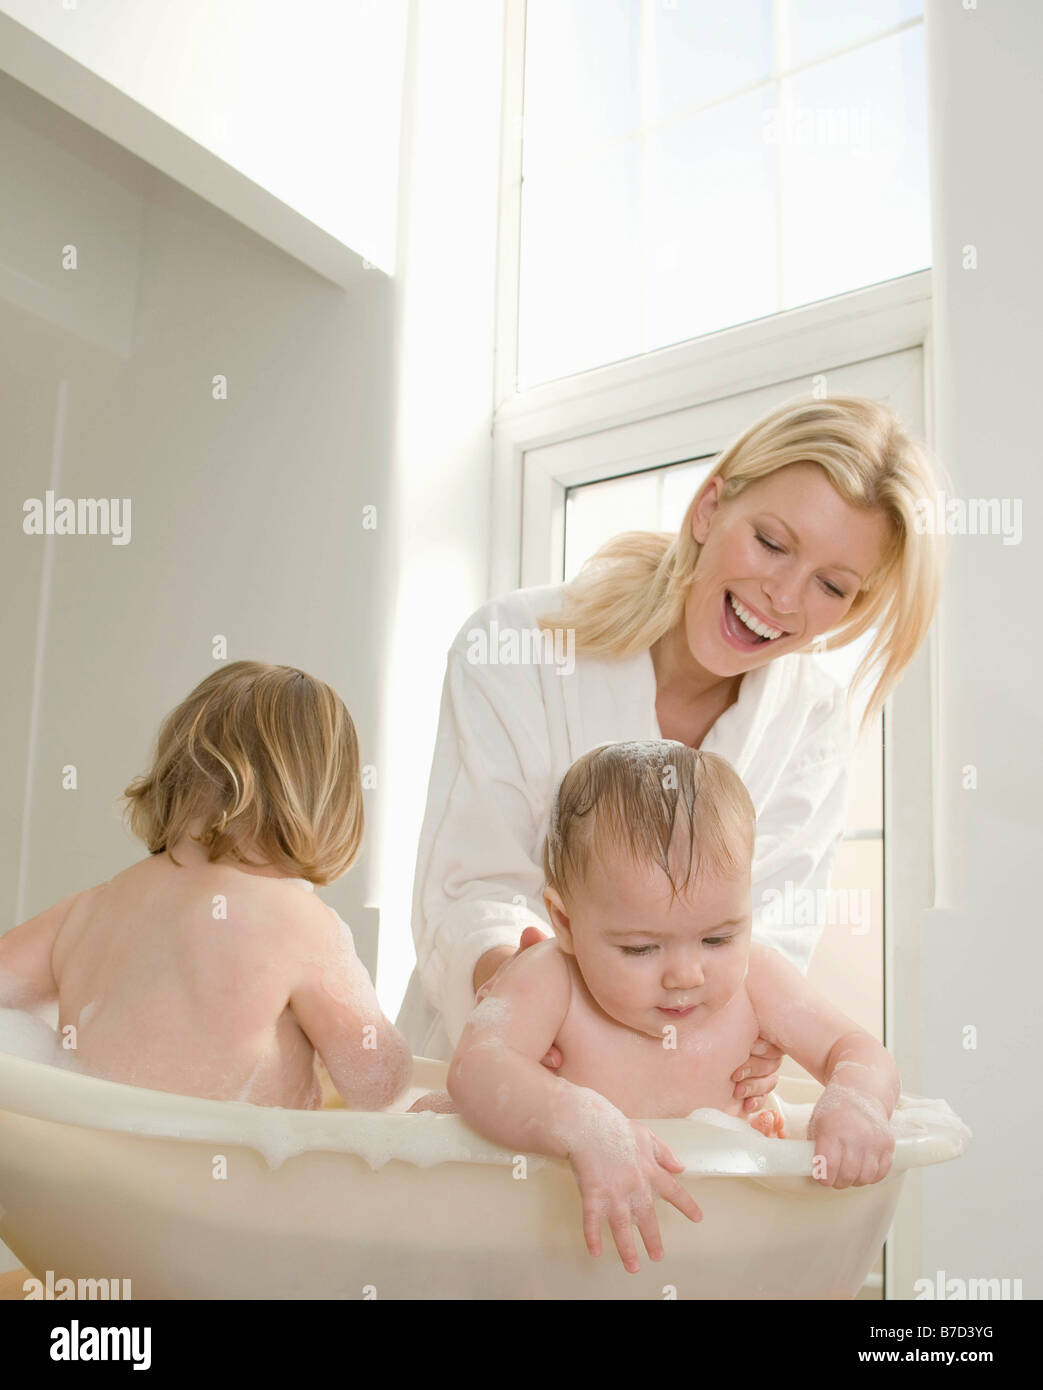 Зрелая мама в ванной. Мать купает ребенка. Мама купается с детьми в ванной. Фотосессия мама и малыш в ванной. Мама с ребенком в ванной комнате.